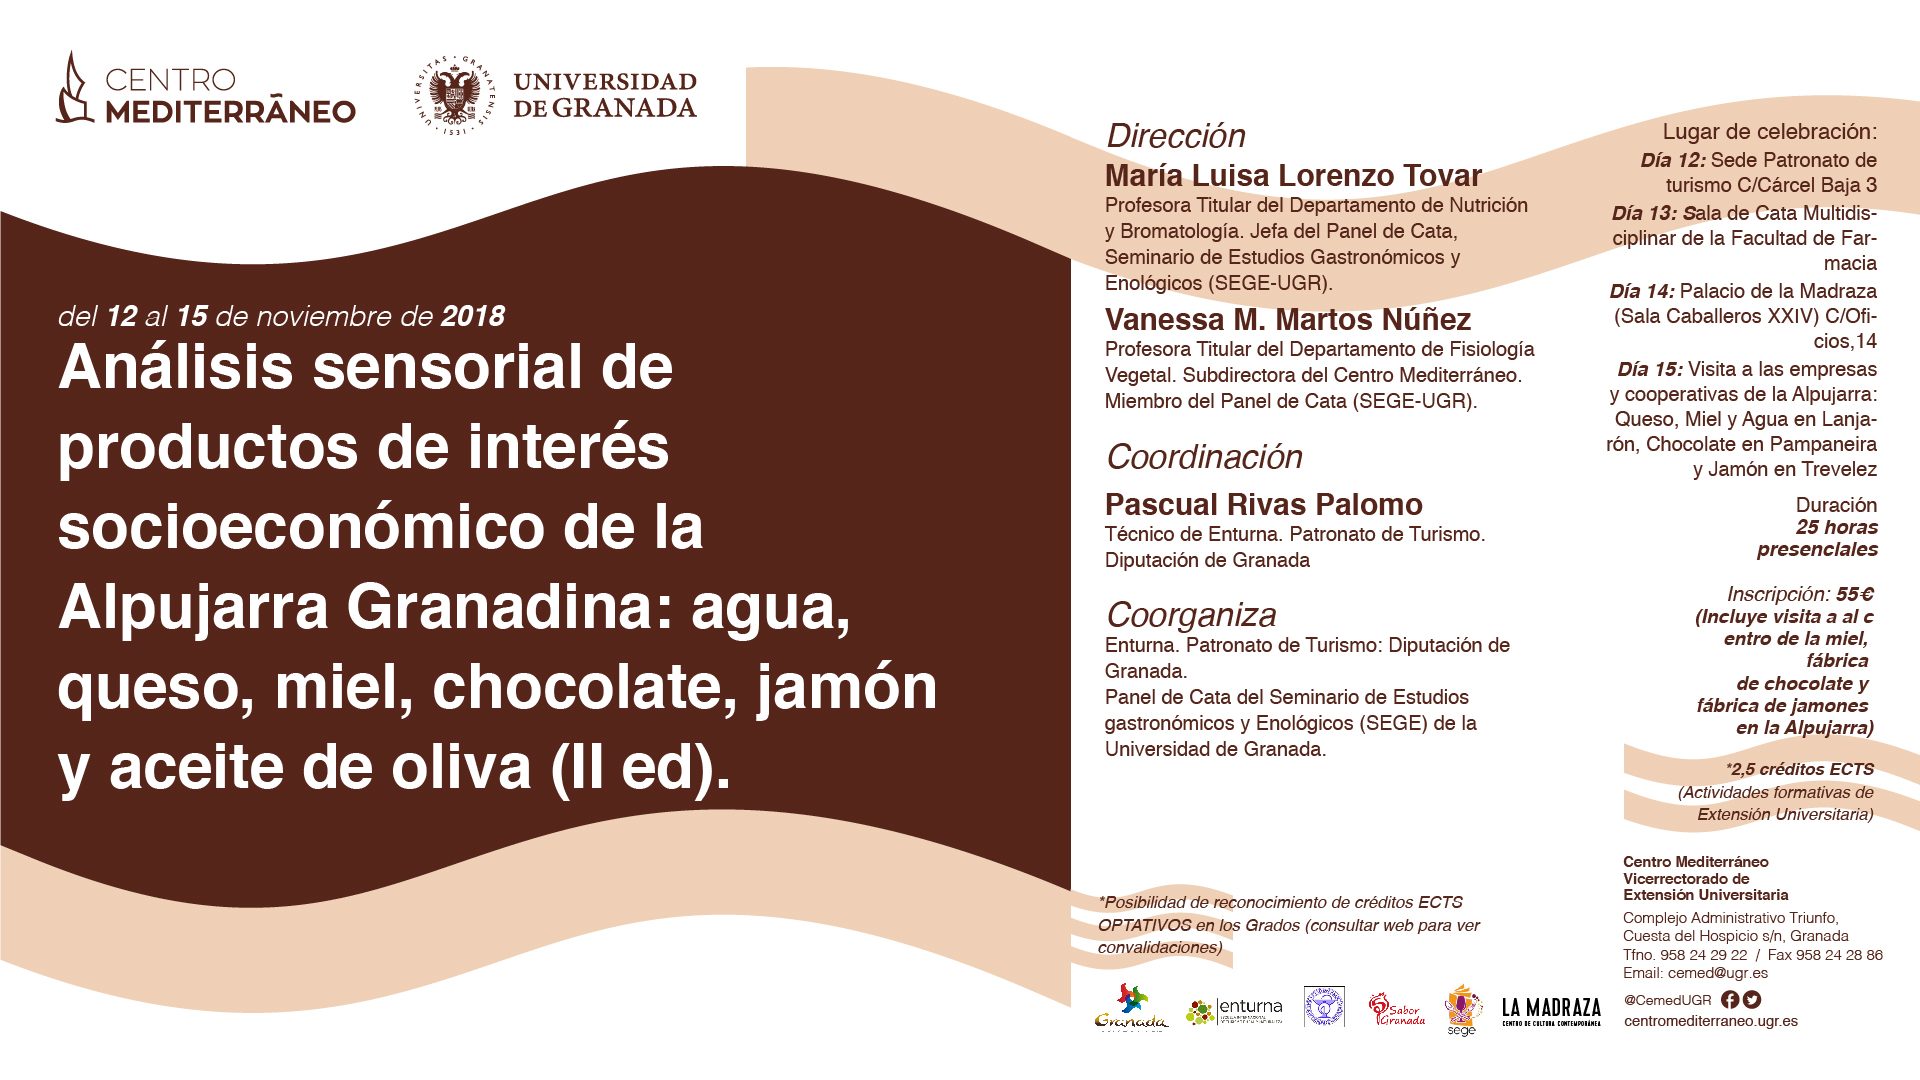 Análisis sensorial de productos de interés socioeconómico de la Alpujarra Granadina: agua, queso, miel, chocolate, jamón y aceite de oliva. II ed.